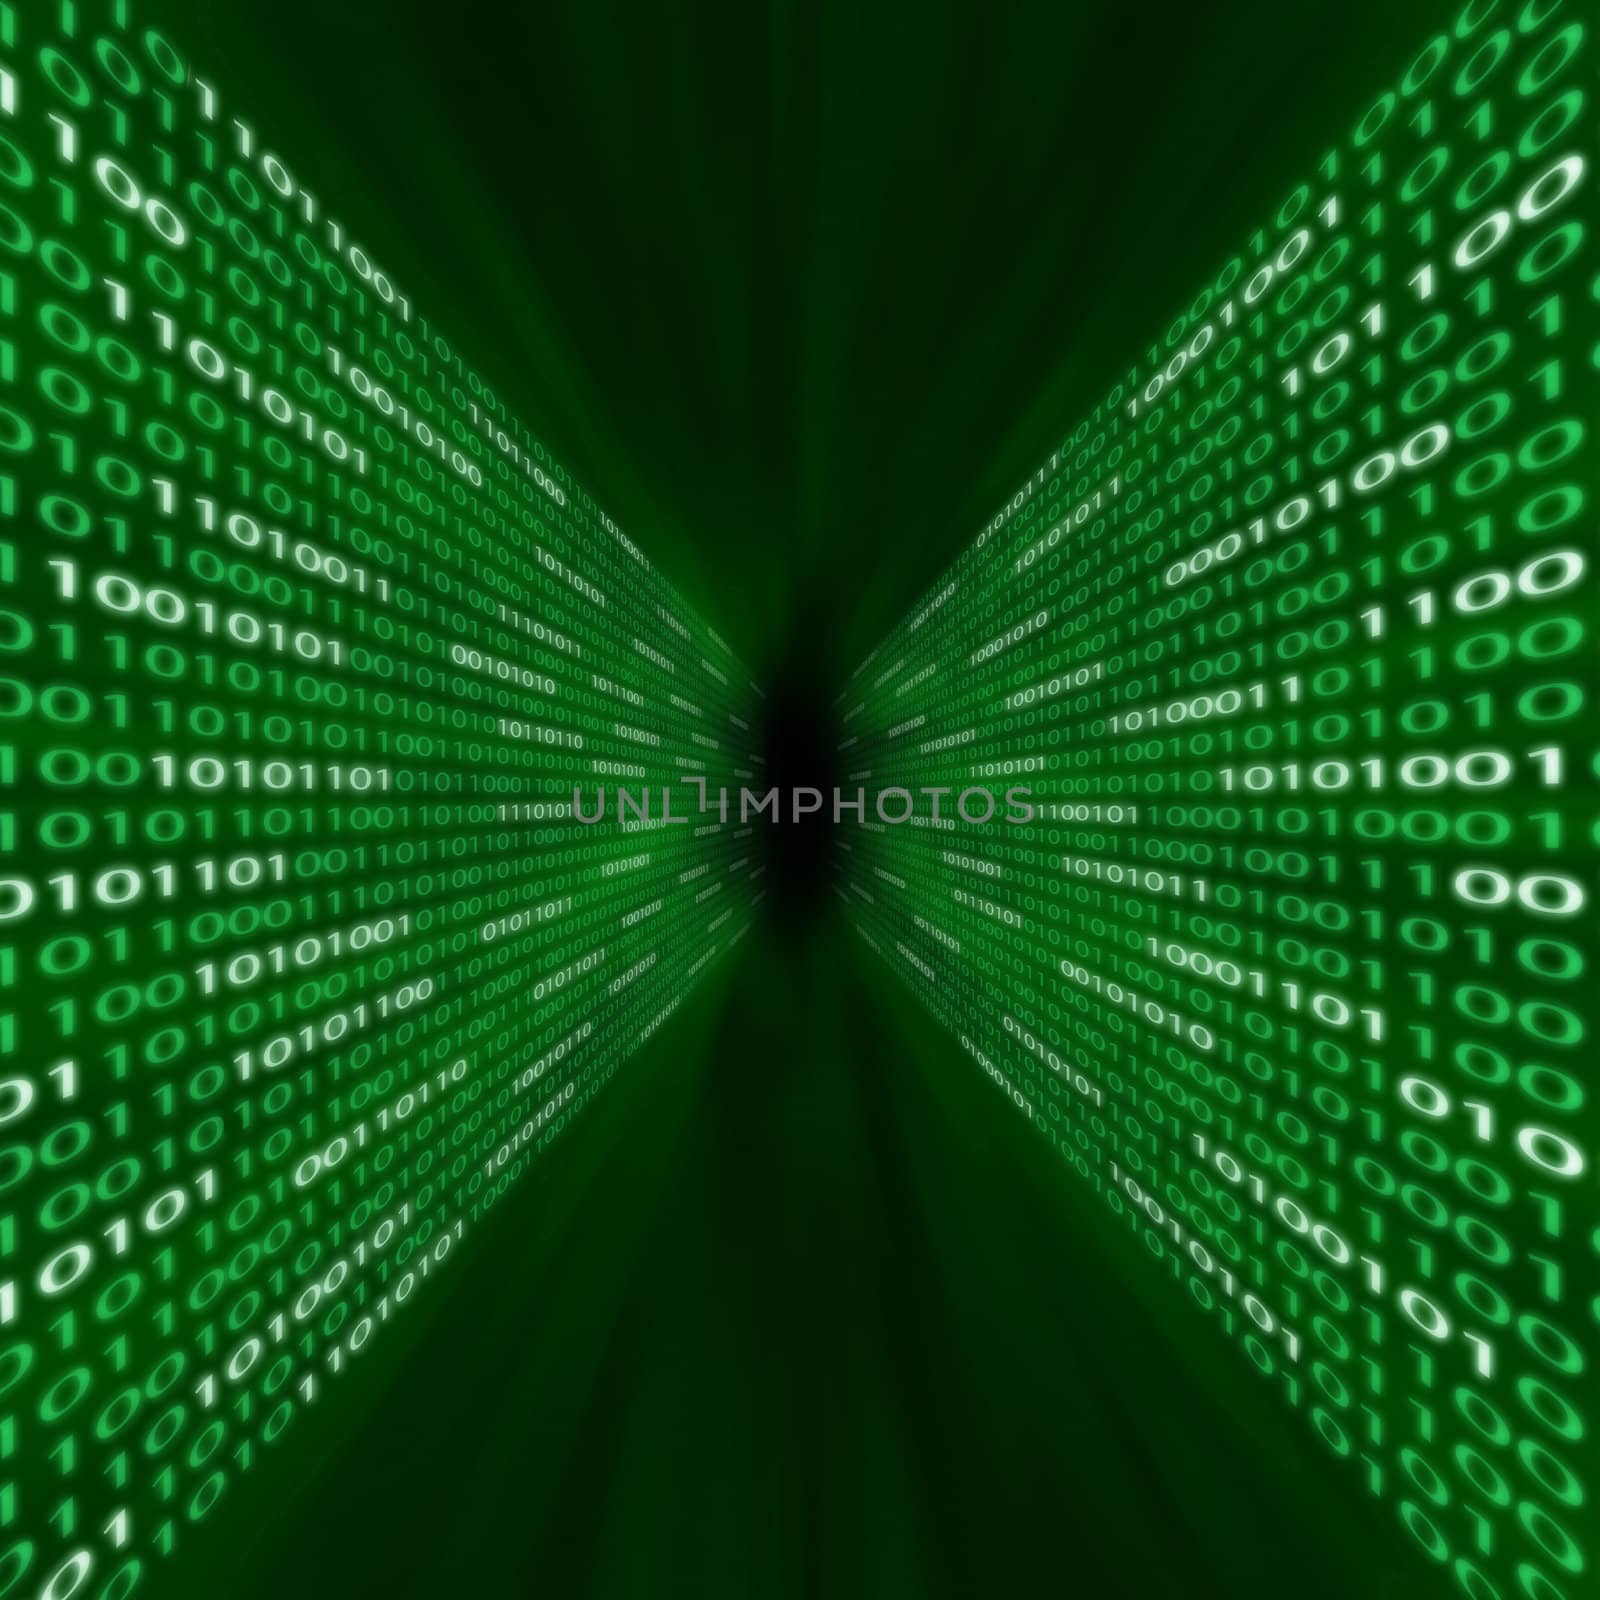 Corridor of green binary code flowing into a vortex